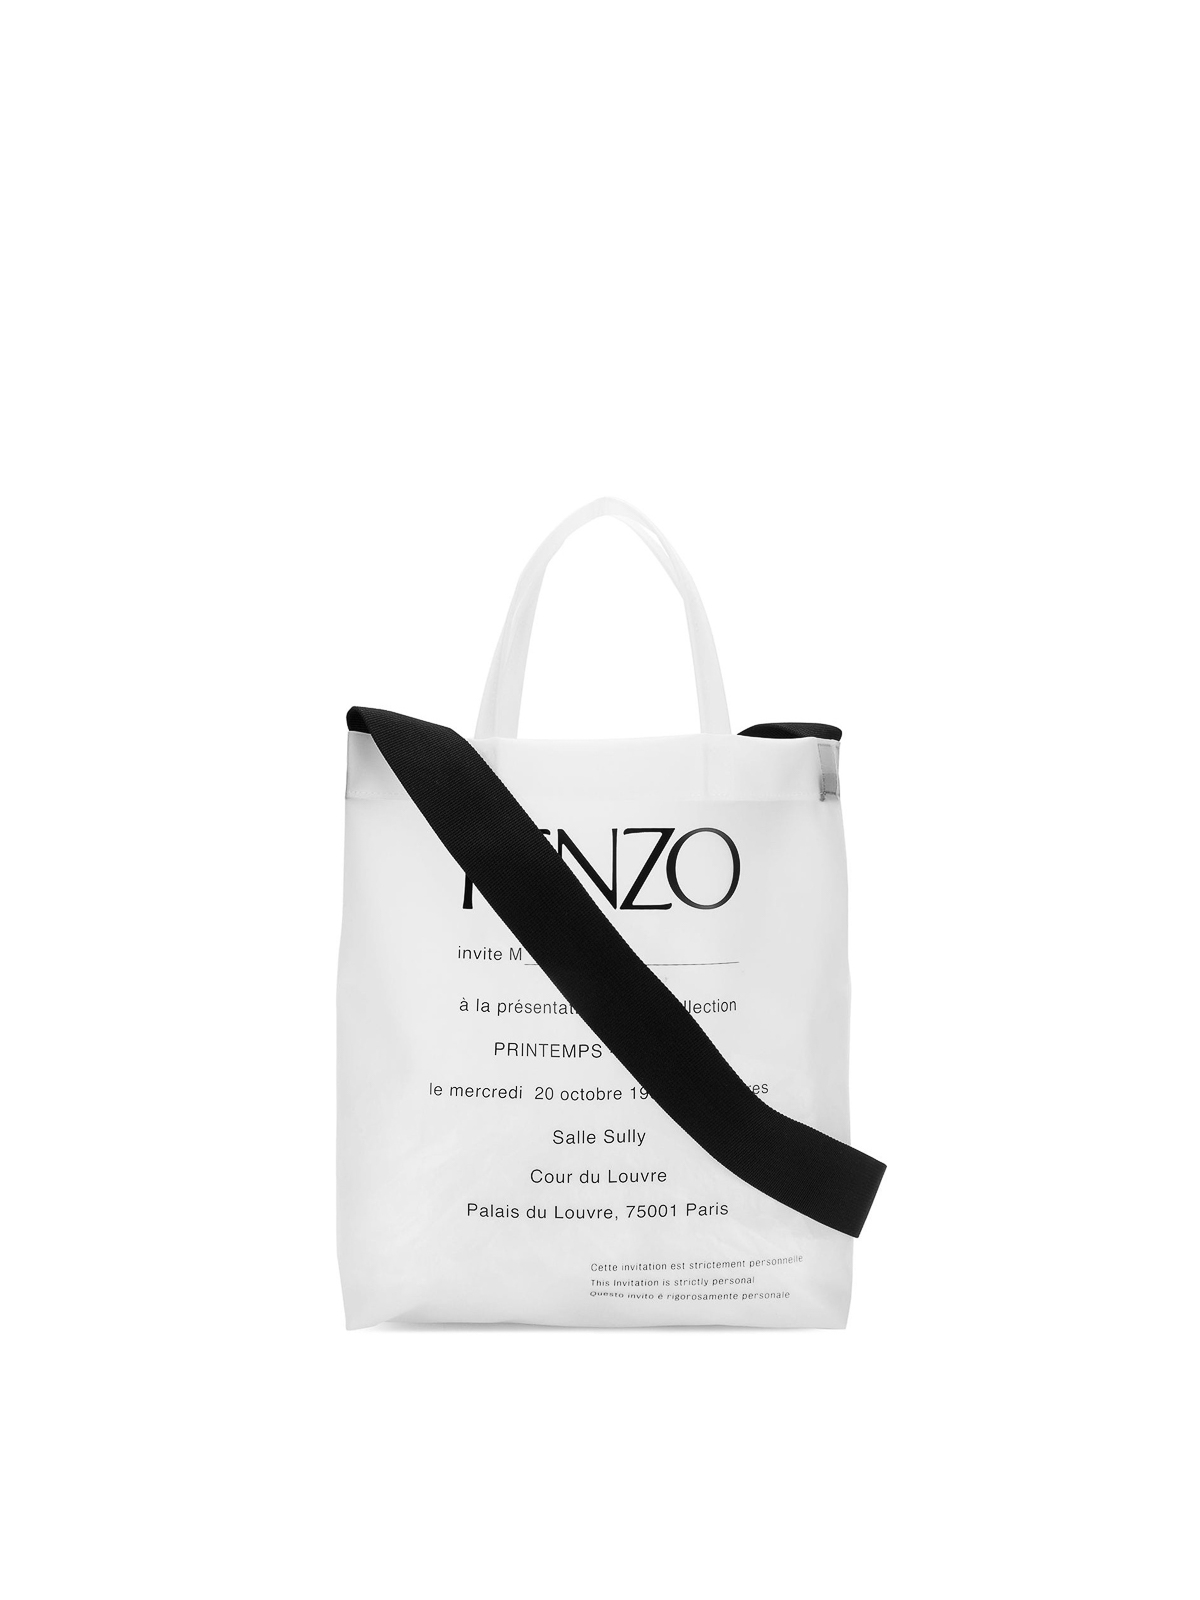 kenzo paper bag